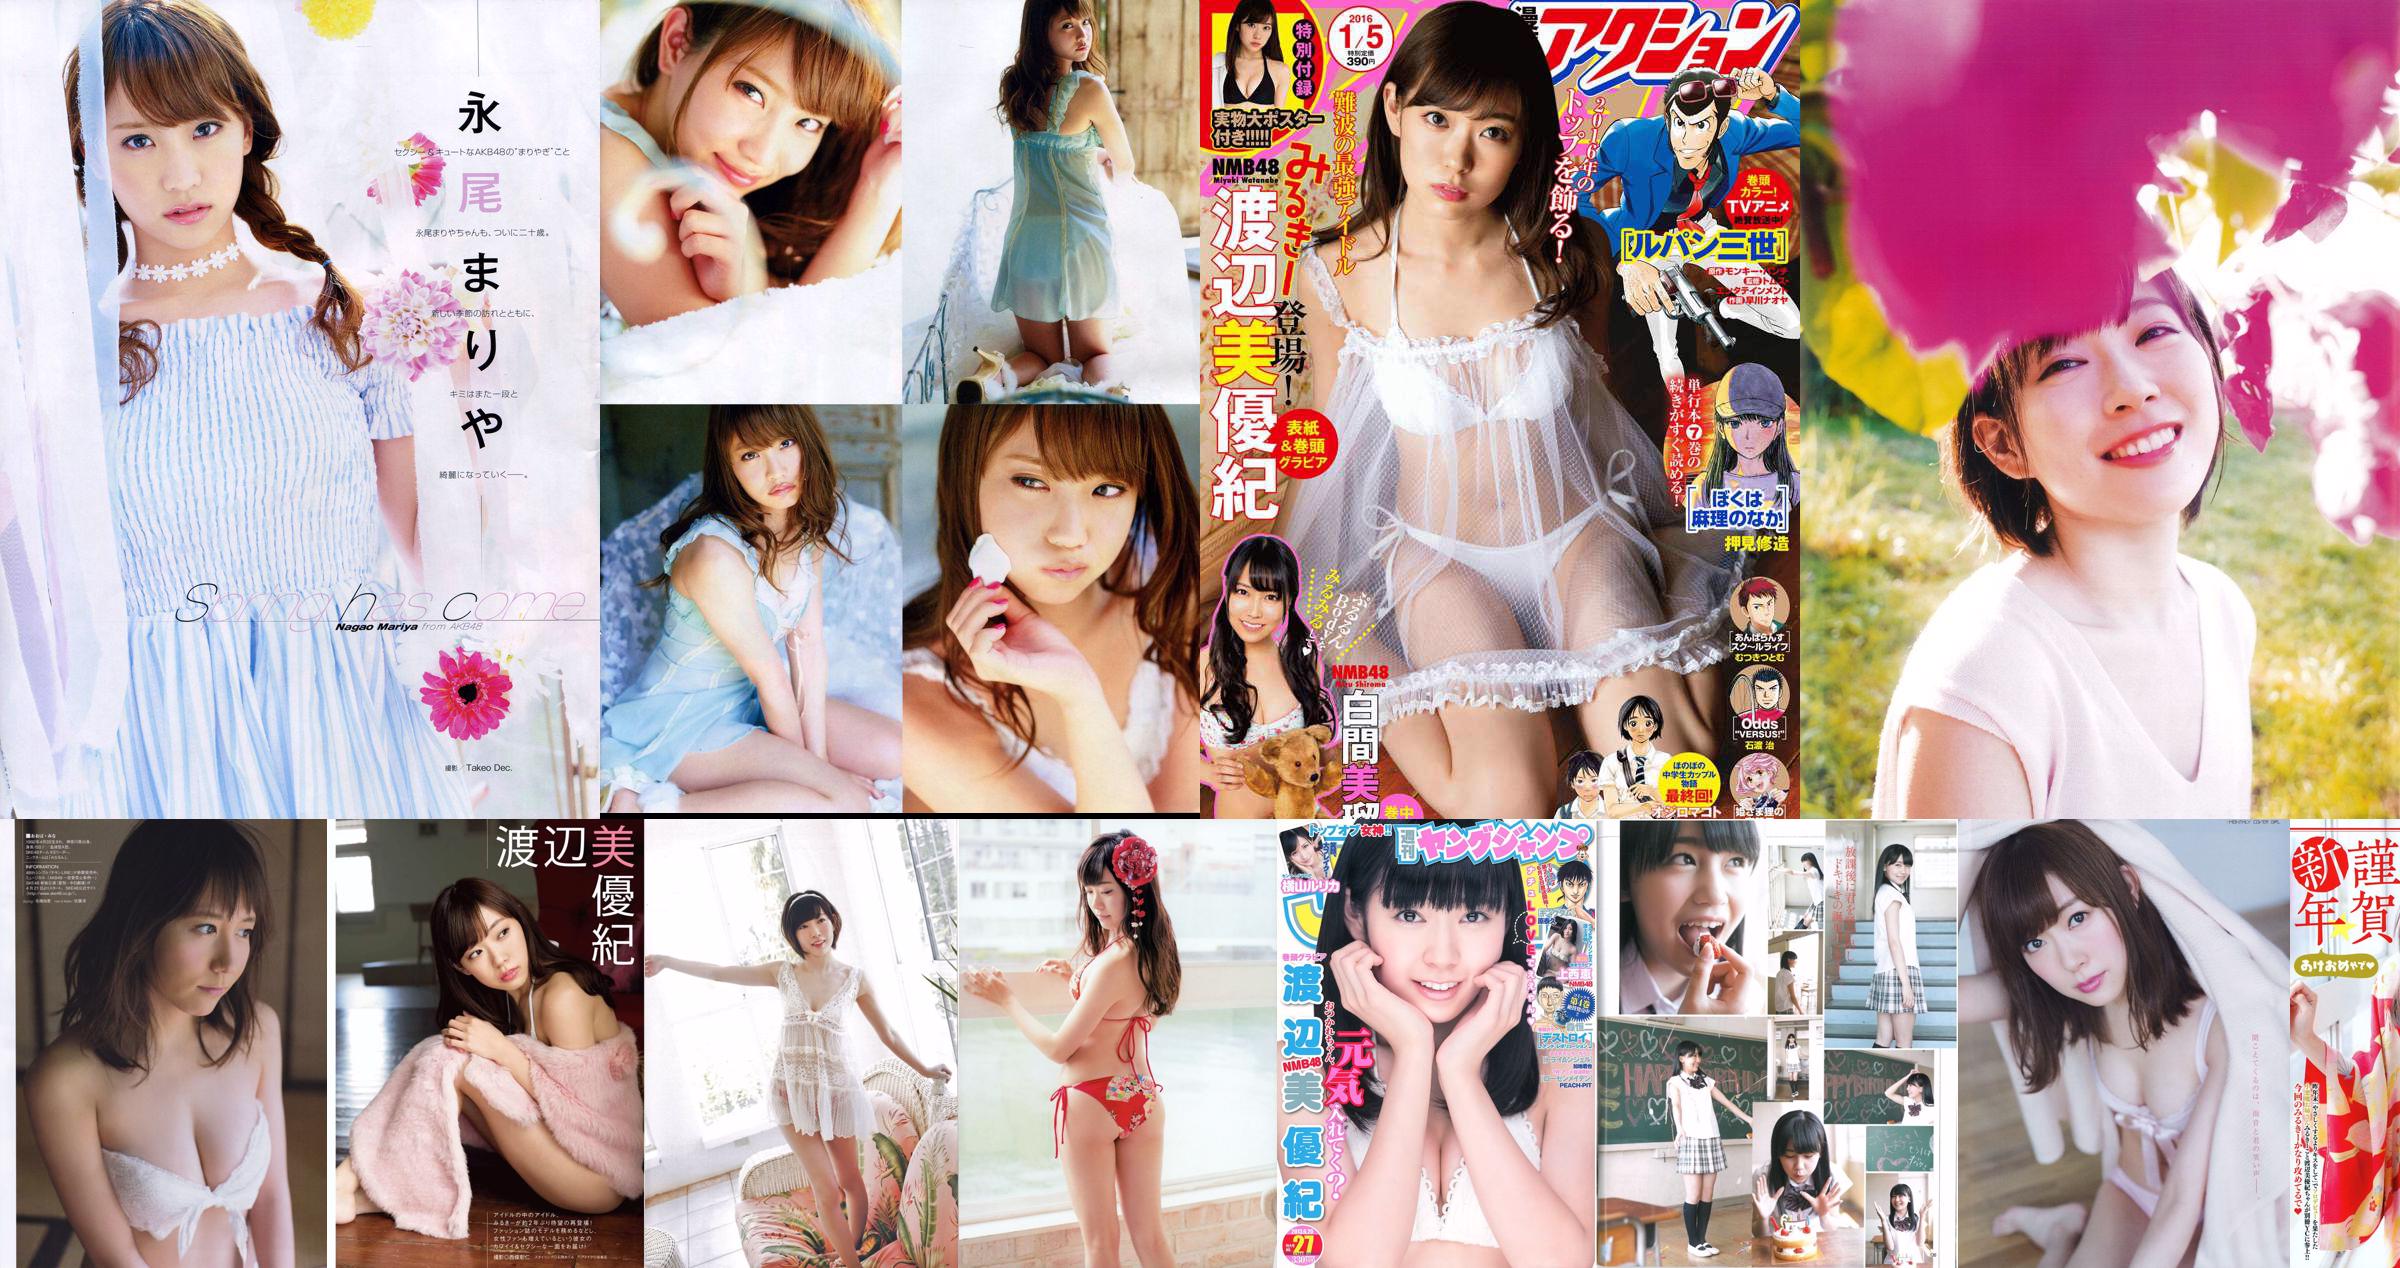 [Semangat Komik Besar Mingguan] Miyuki Watanabe 2015 Majalah Foto No. 02-03 No.122861 Halaman 1